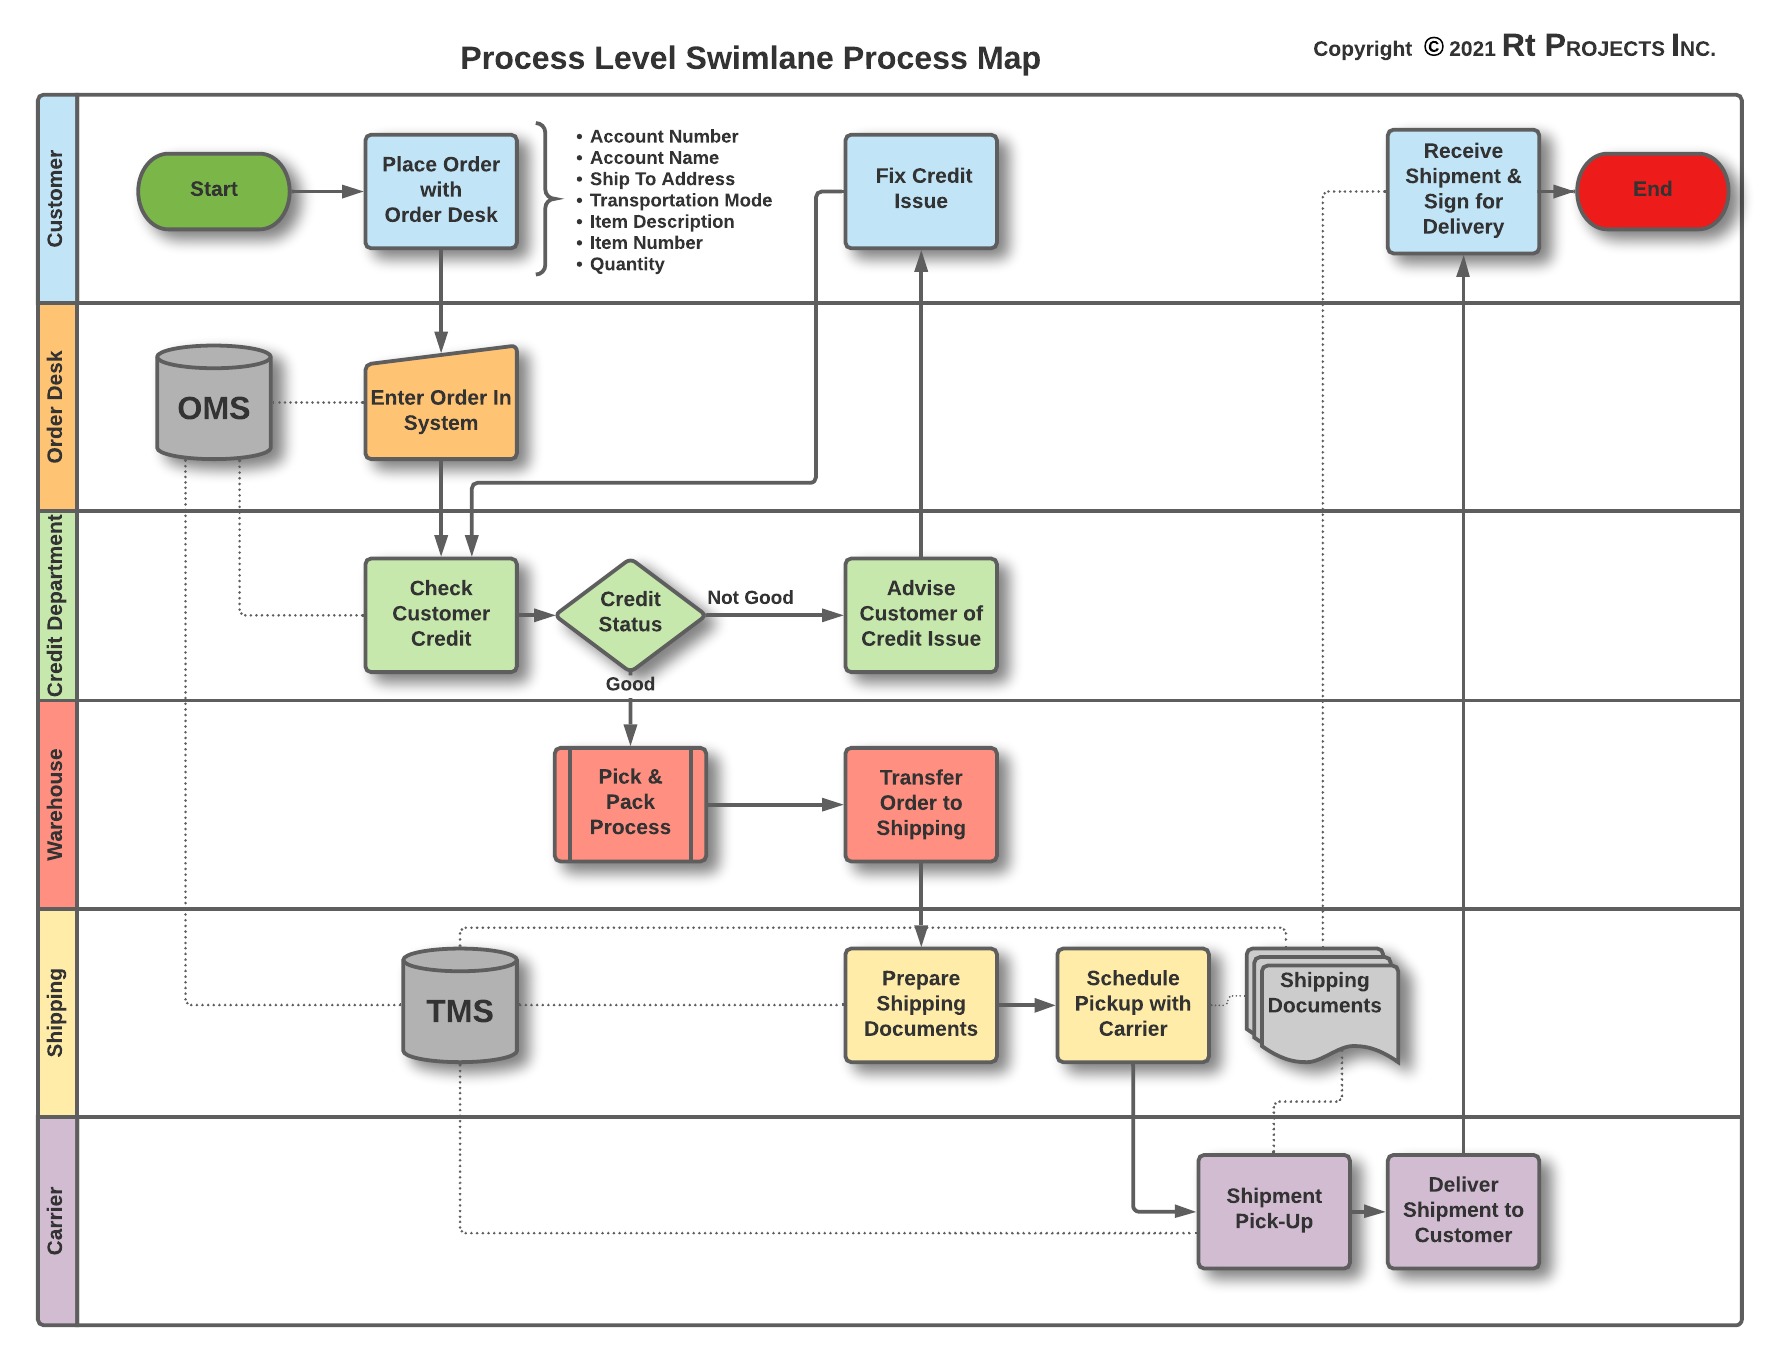 Process Level Swimlane Process Map